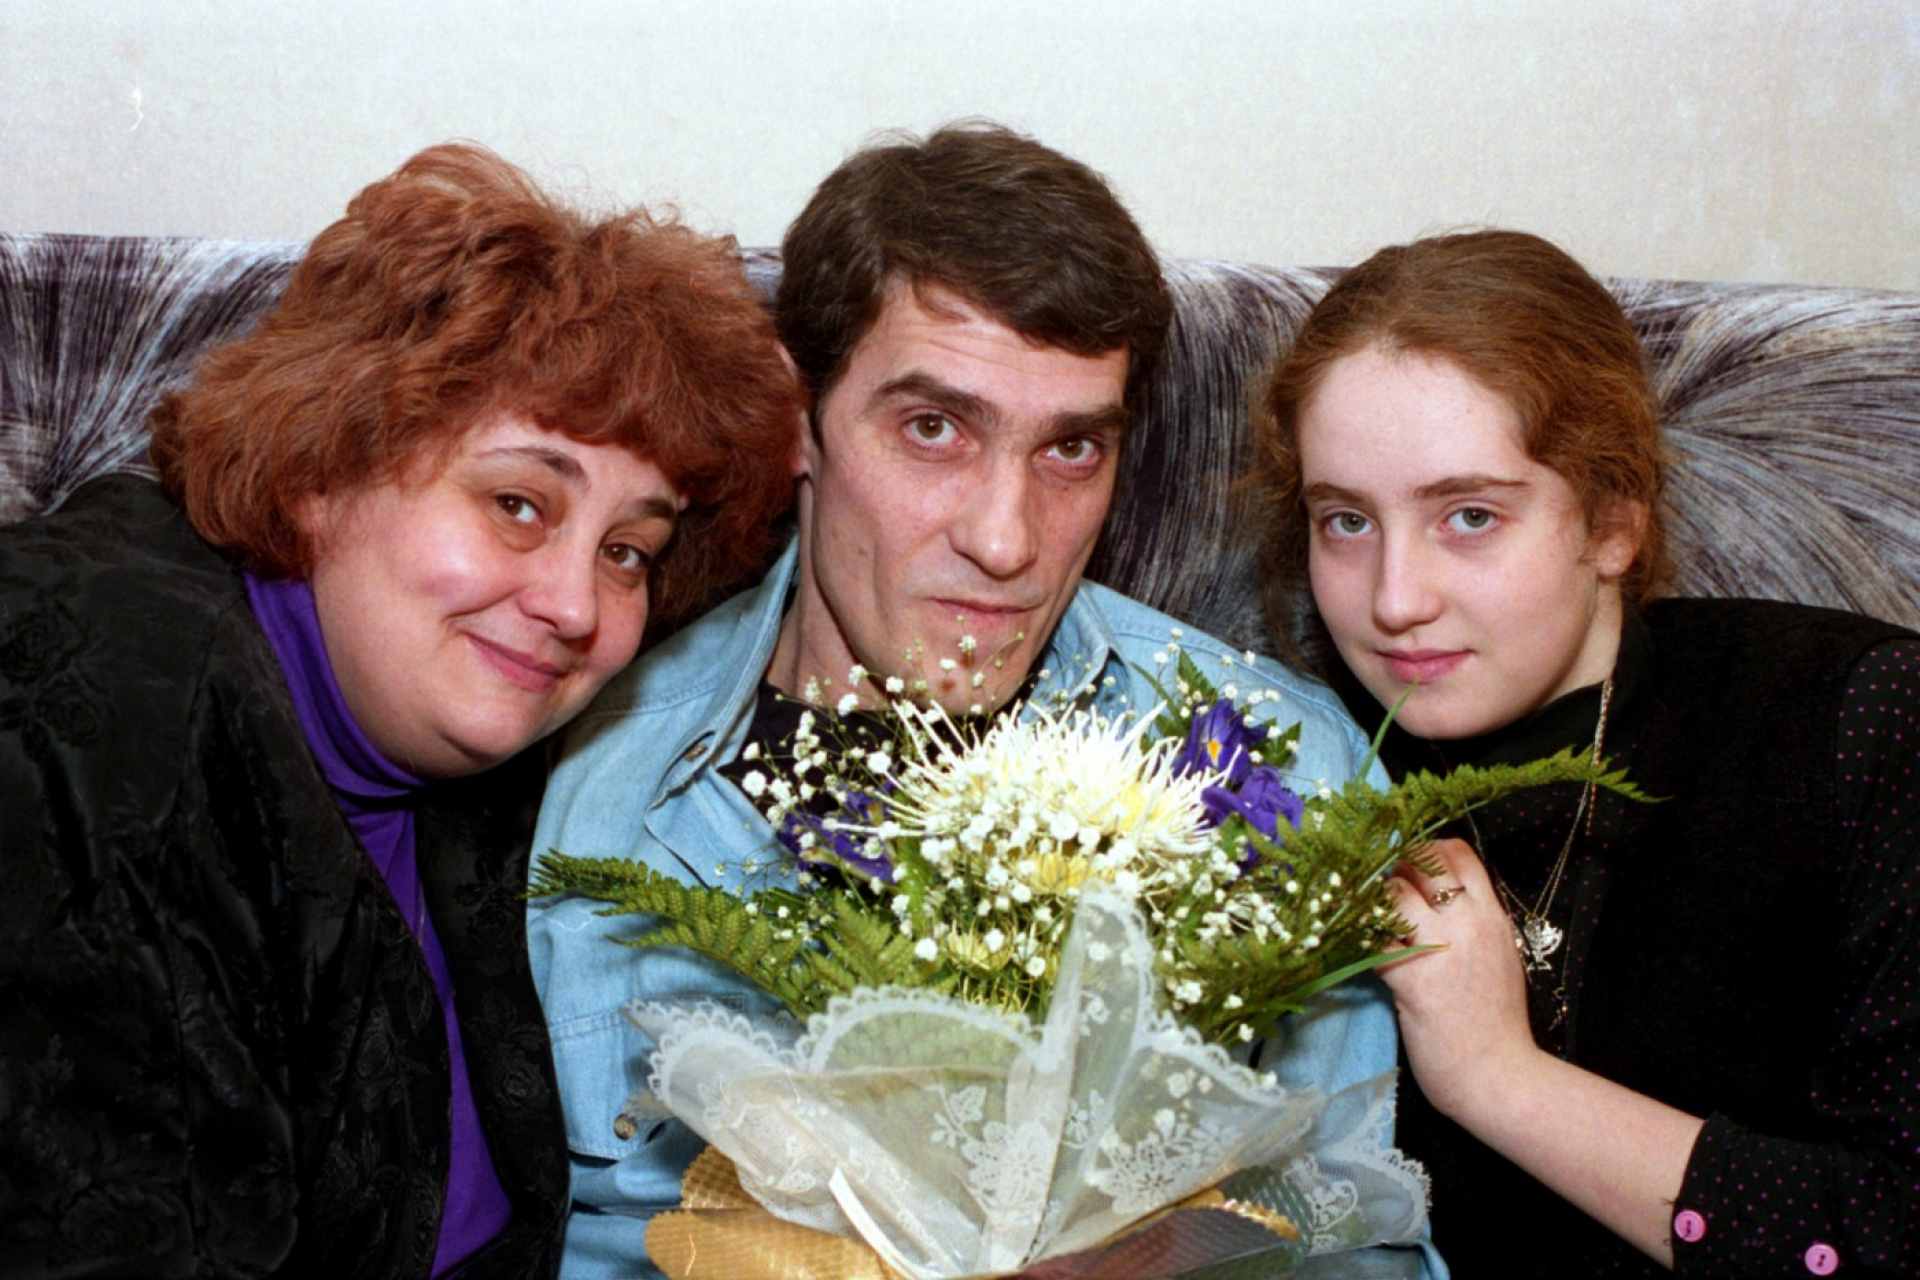 Валерий Гаркалин с женой и дочкой